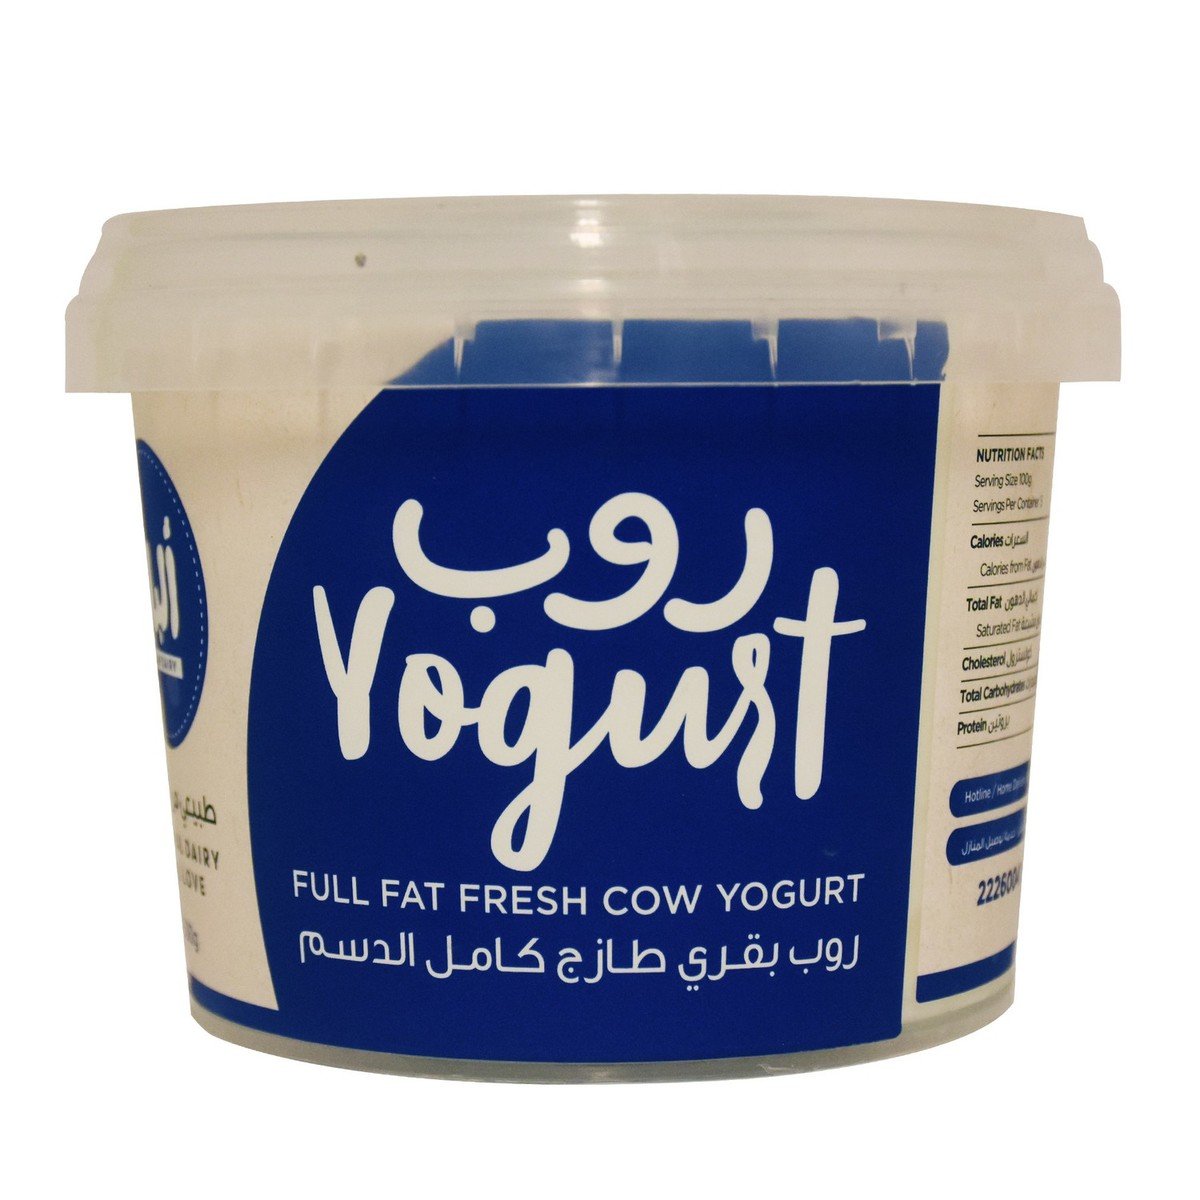 اشتري قم بشراء ألبان زبادي بقري طازج كامل الدسم 500جم Online at Best Price من الموقع - من لولو هايبر ماركت Plain Yoghurt في الكويت